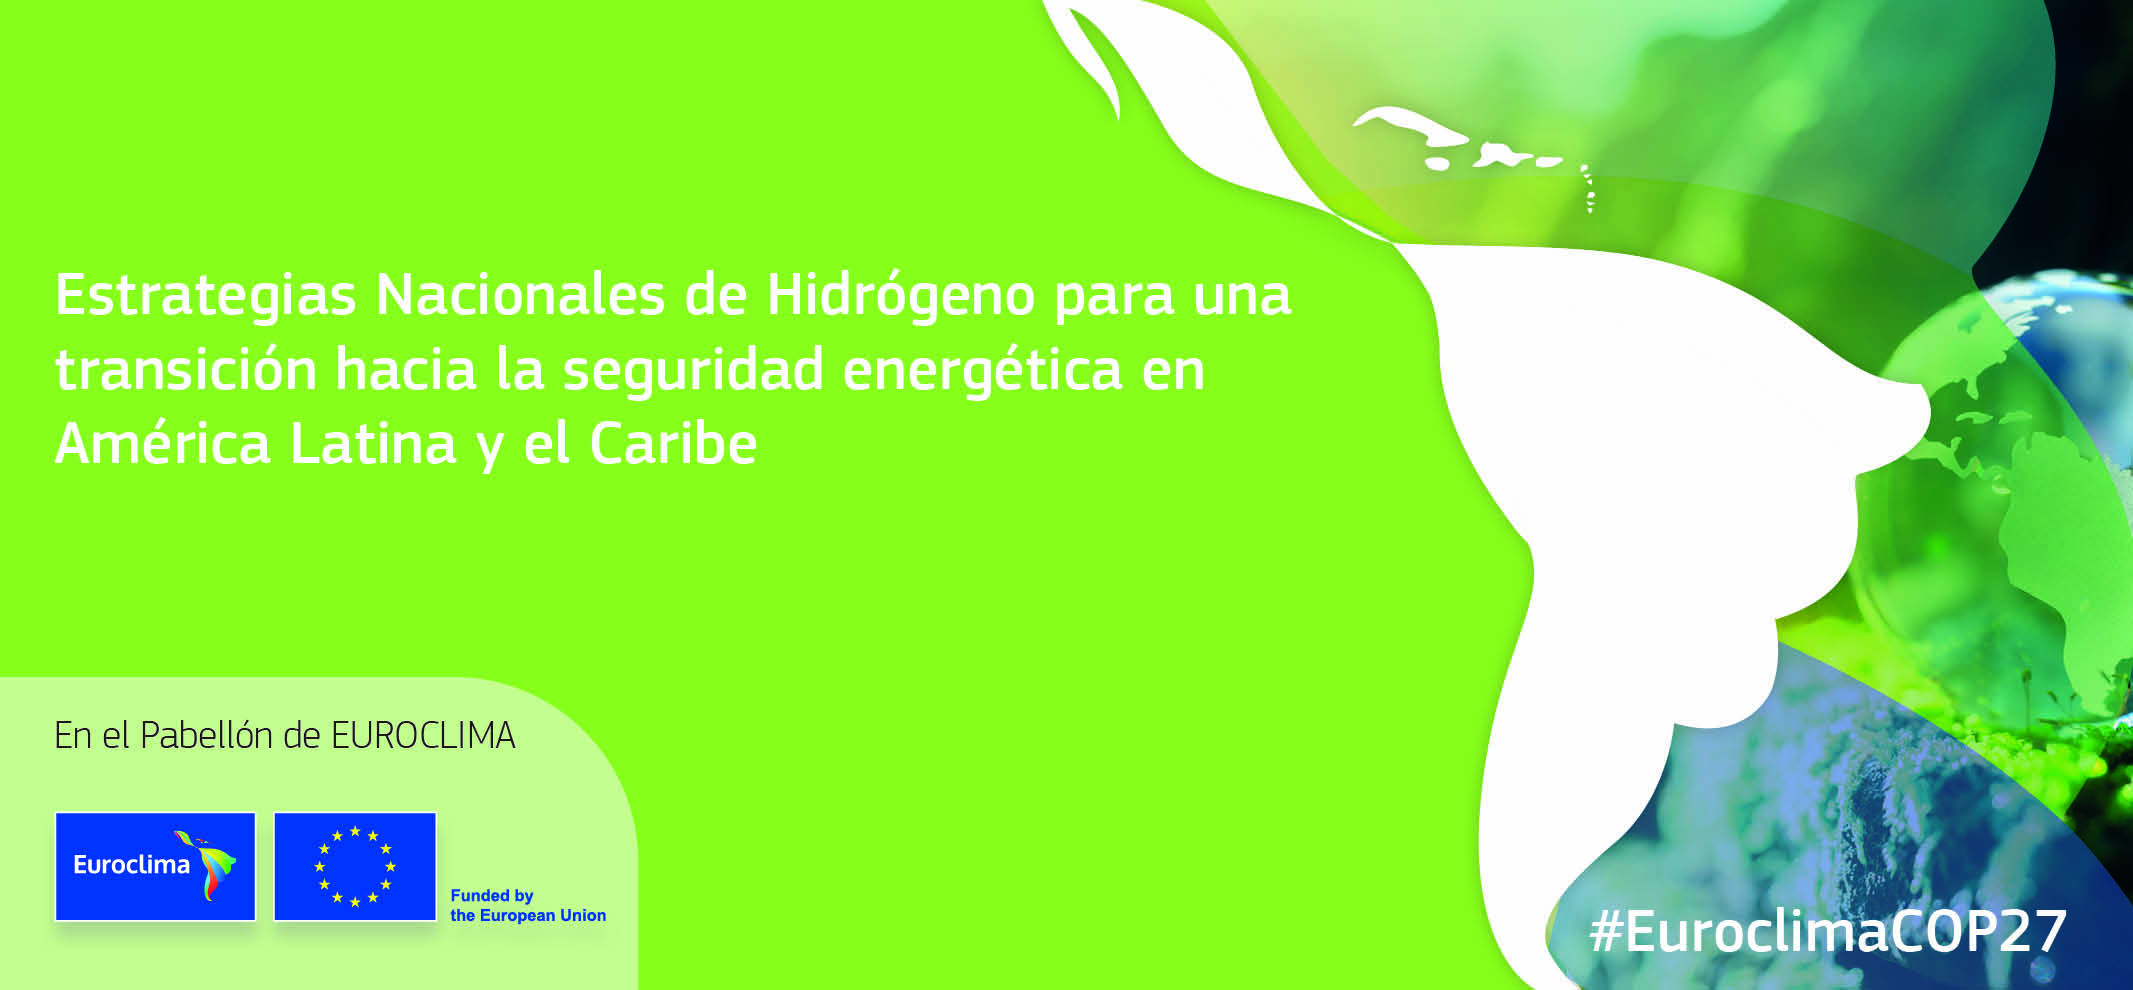 Estrategias Nacionales de Hidrogeno para una transicion hacia la seguridad energetica en America Latina y el Caribe